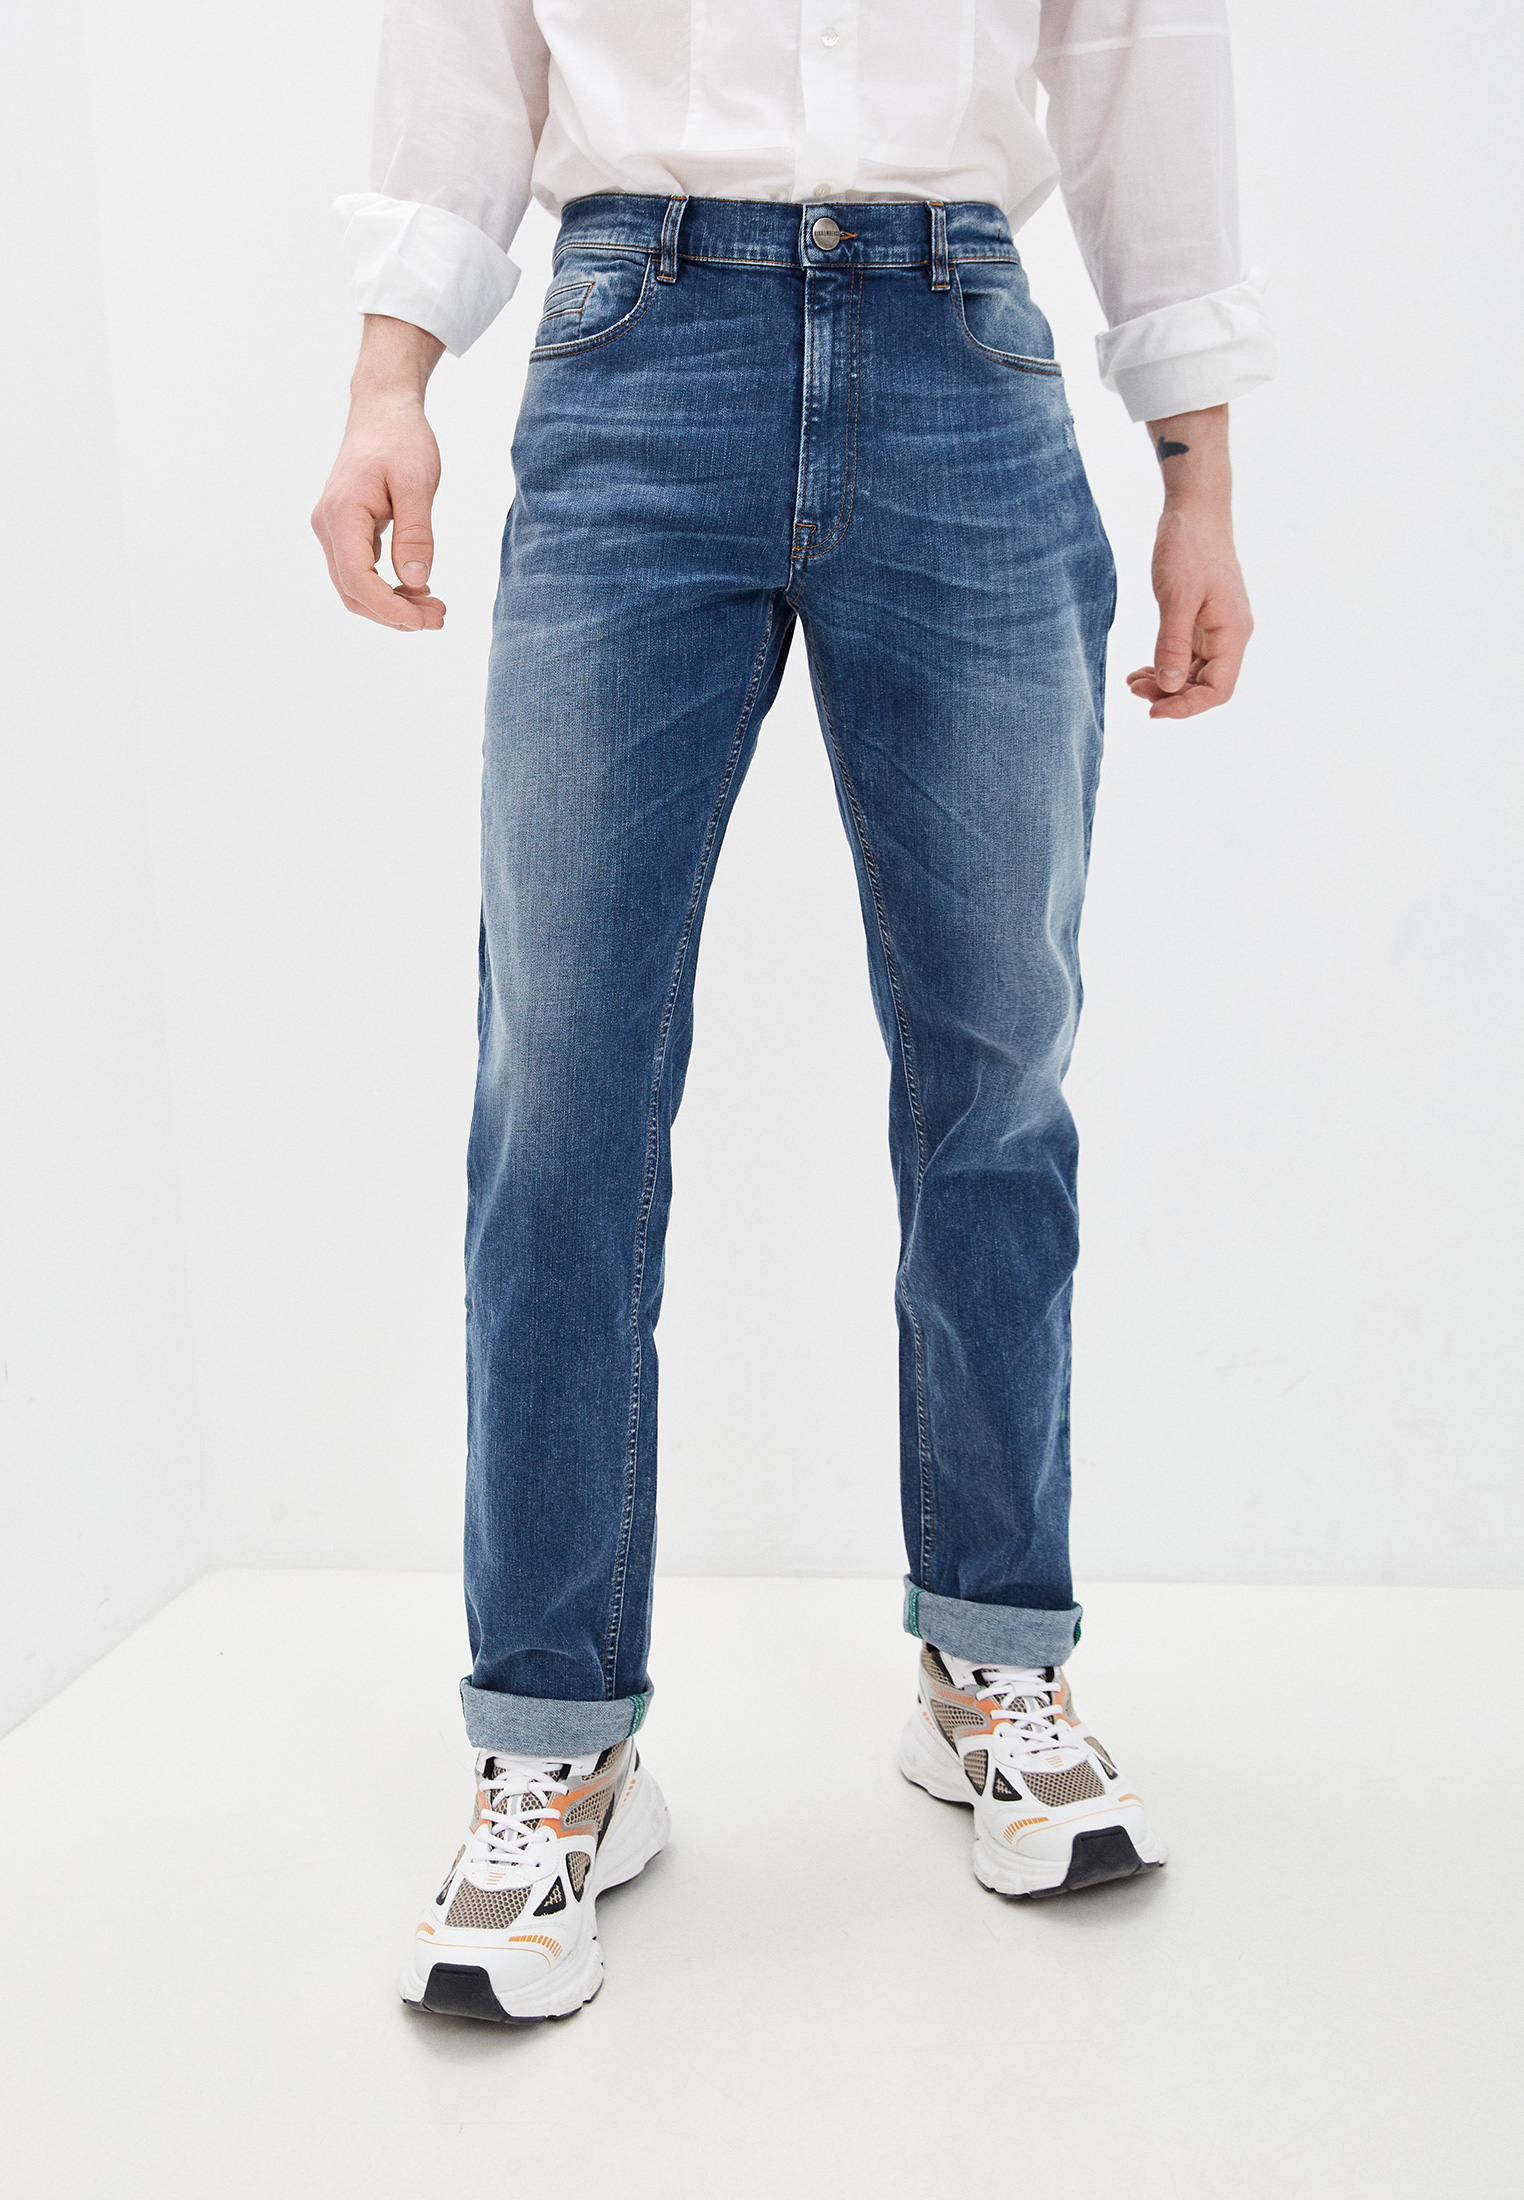 Мужские прямые джинсы Bikkembergs (Биккембергс) C Q 102 00 S 3081: изображение 1